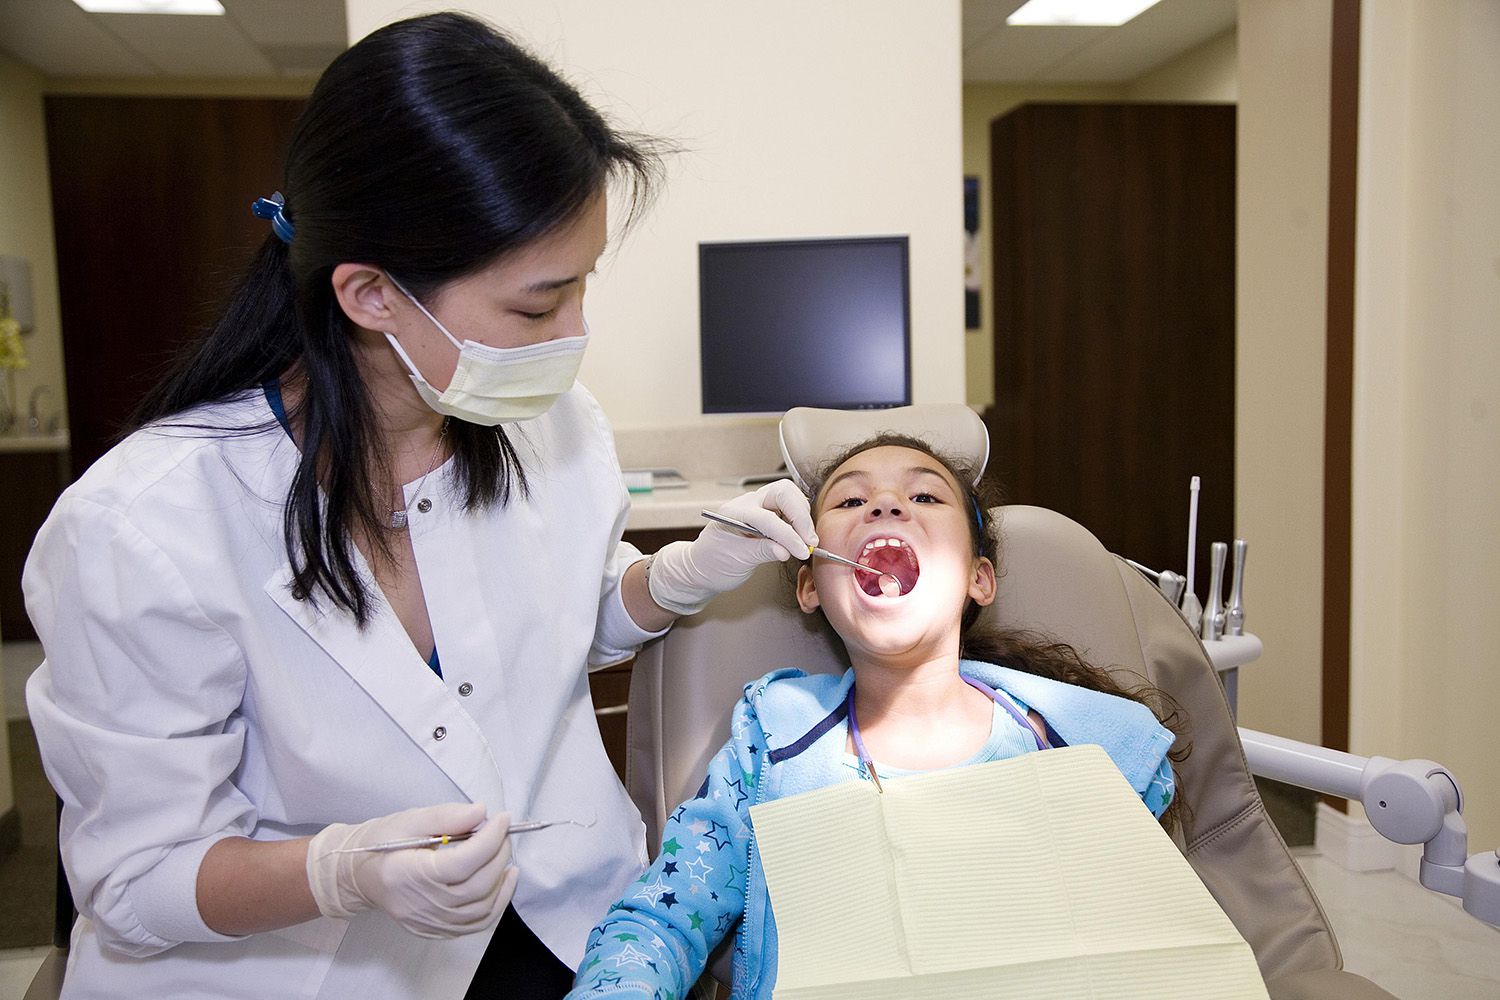 En este momento estás viendo ¿Qué hacen varios dentistas?